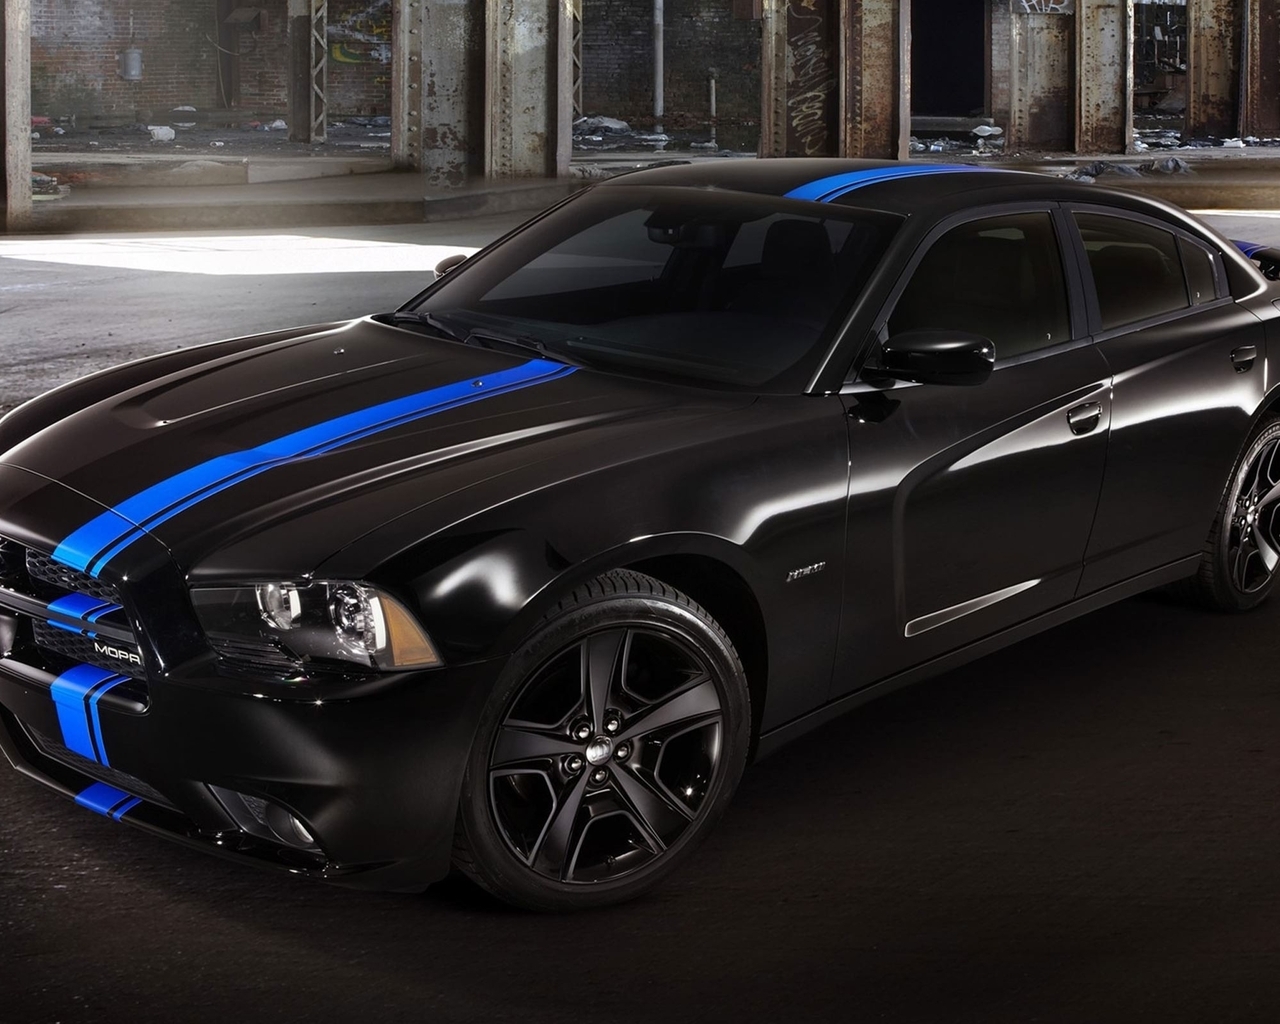 Картинка: Dodge, Charger, Mopar, black, черный, спорткар, синяя полоса.